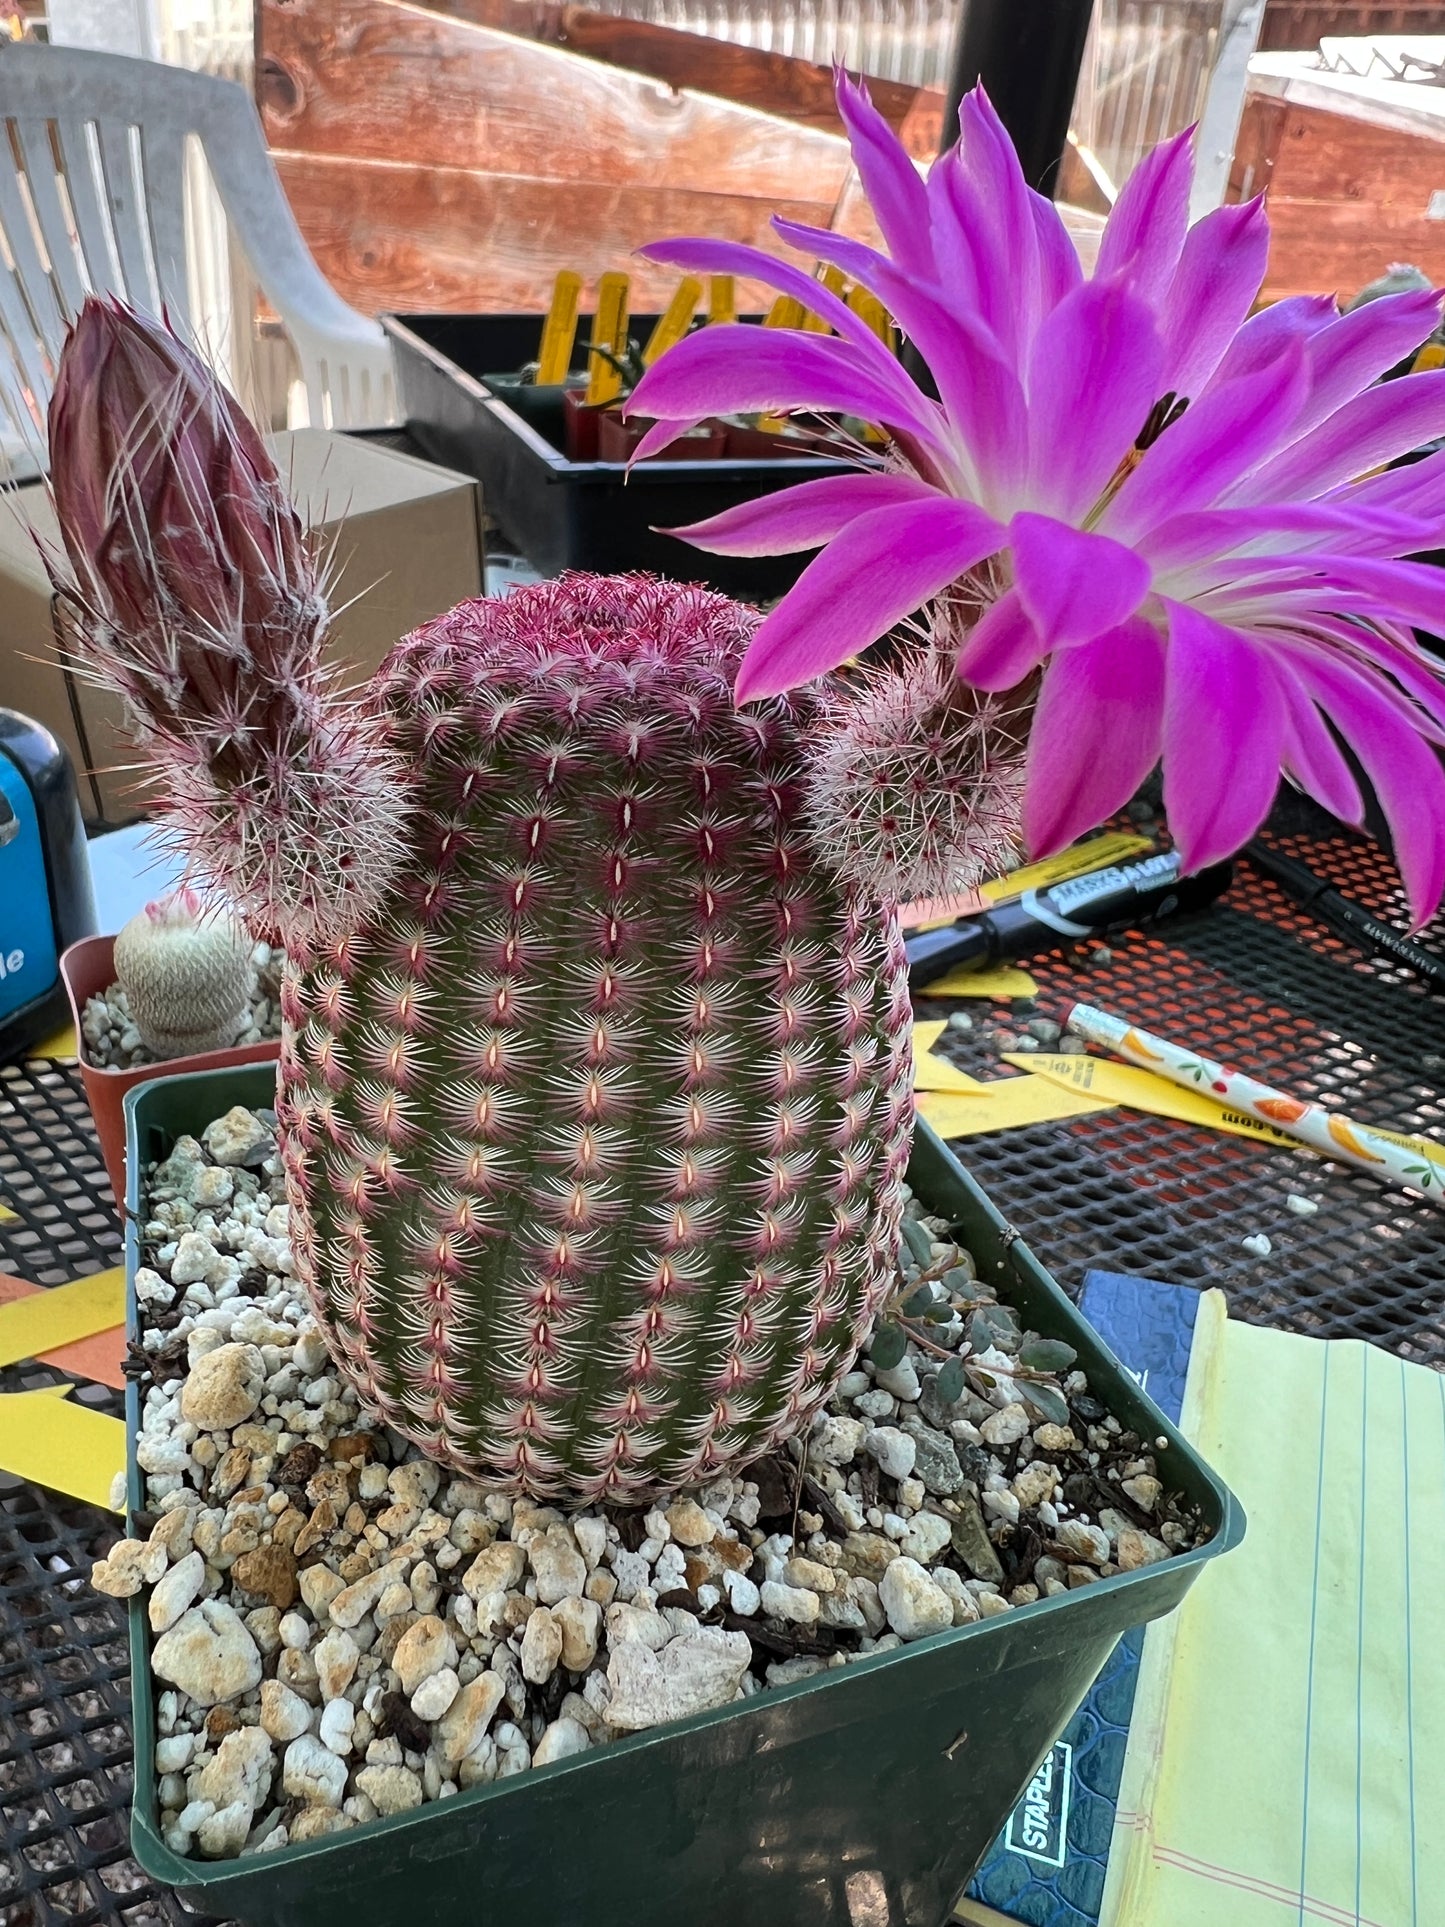 Echinocereus rubispinus cactus in 4.25 inch pot